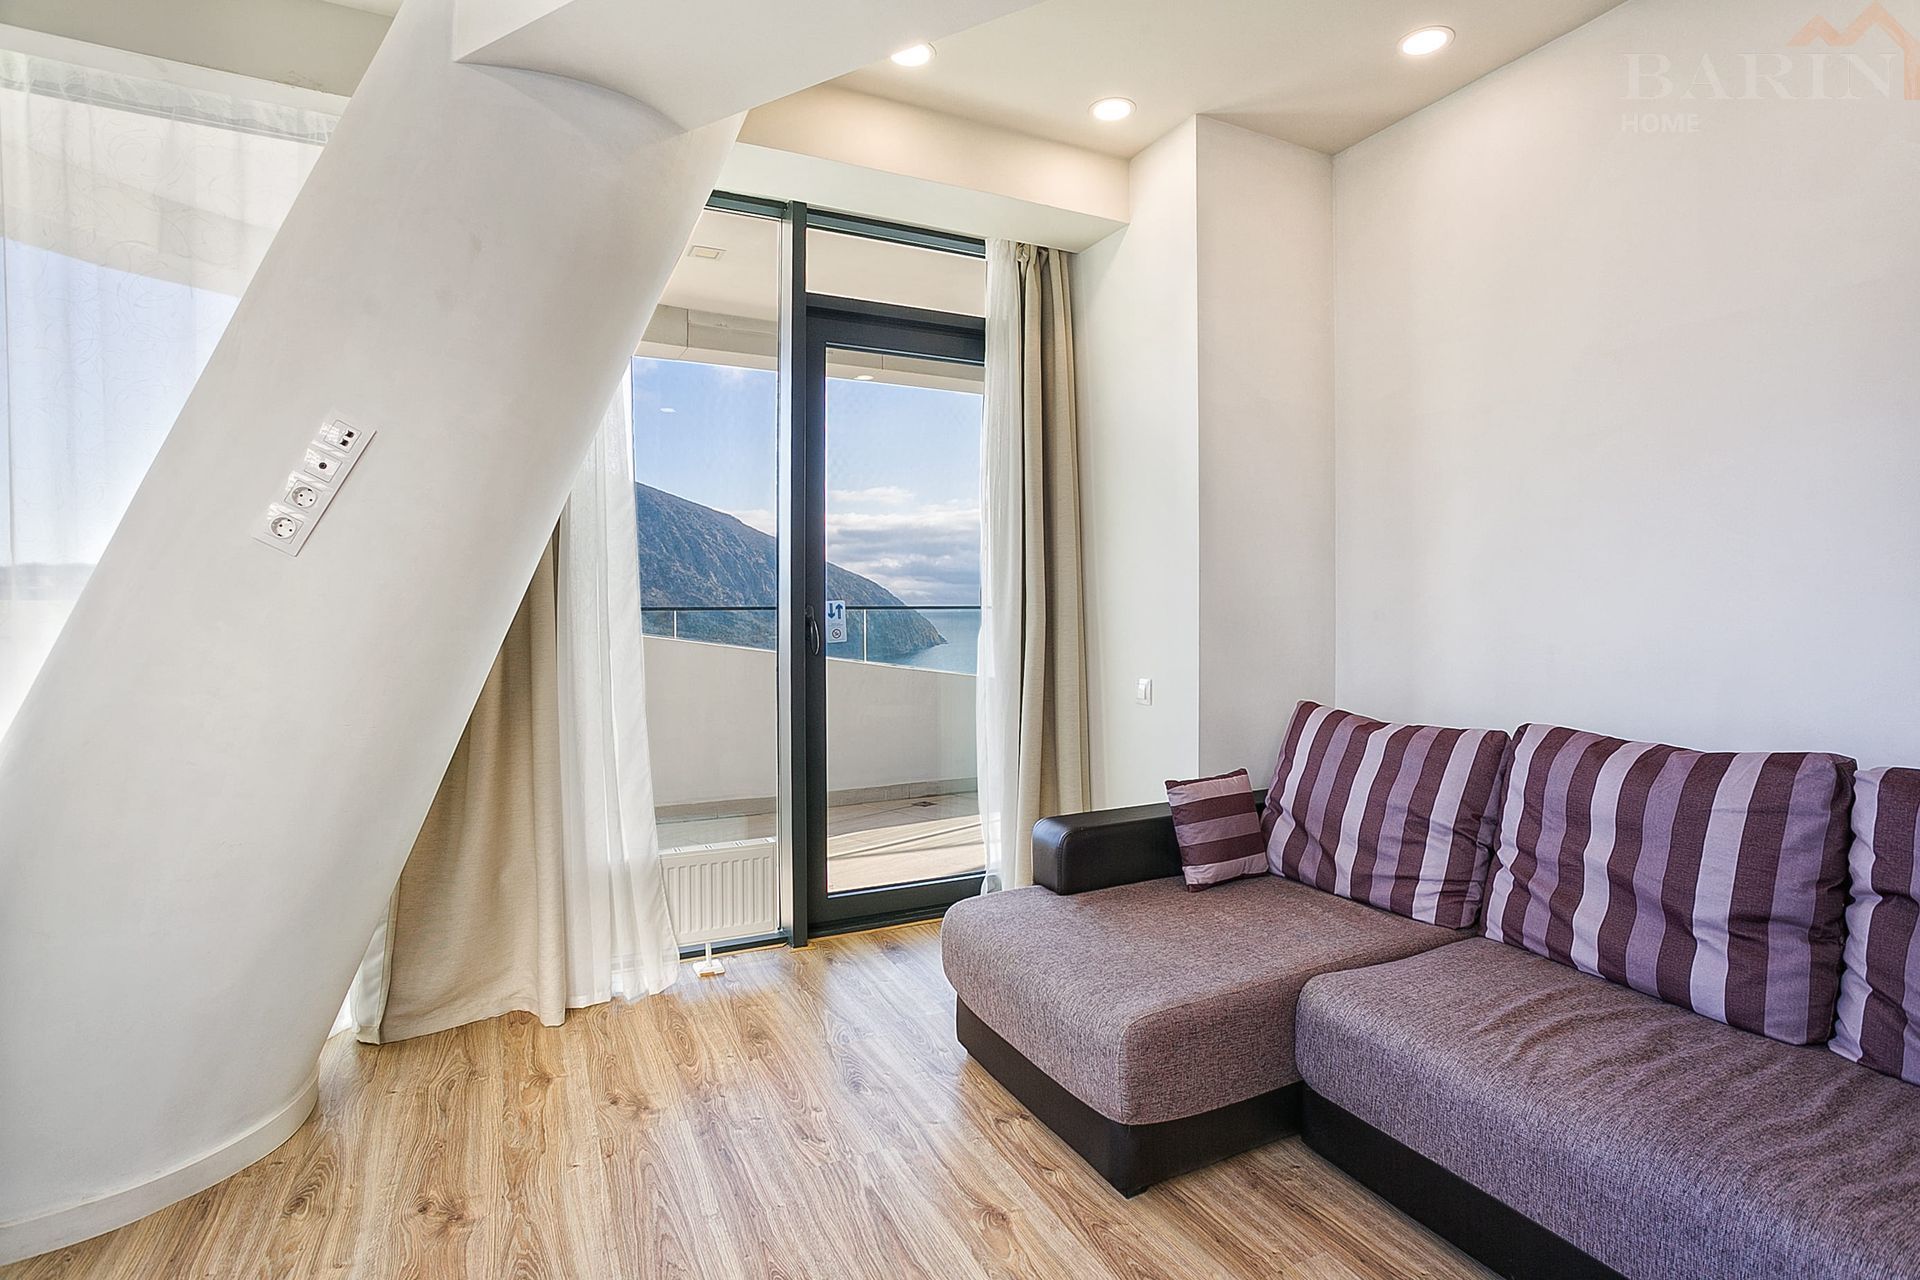 Продаётся видовая трёхкомнатная  квартира 112 м2 в комплексе бизнес класса «Гурзуф Ривьера» с потрясающими видами на знаменитую гору Аю-Даг и бескрайнее море!